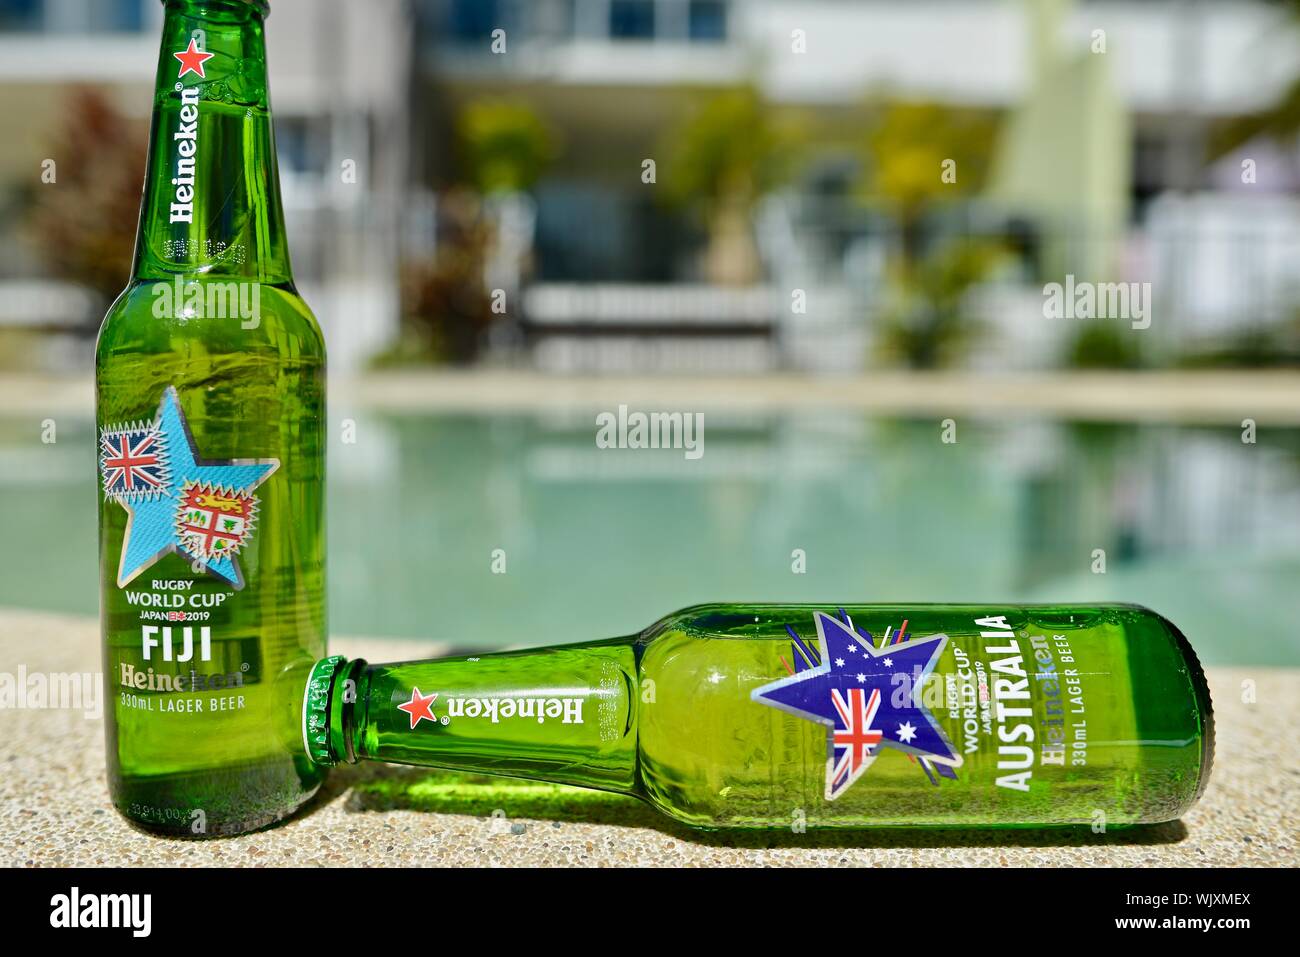 Fiji versus Australia, Fiji wins, Heineken 2019 Japan Rugby world cup beer bottles Stock Photo